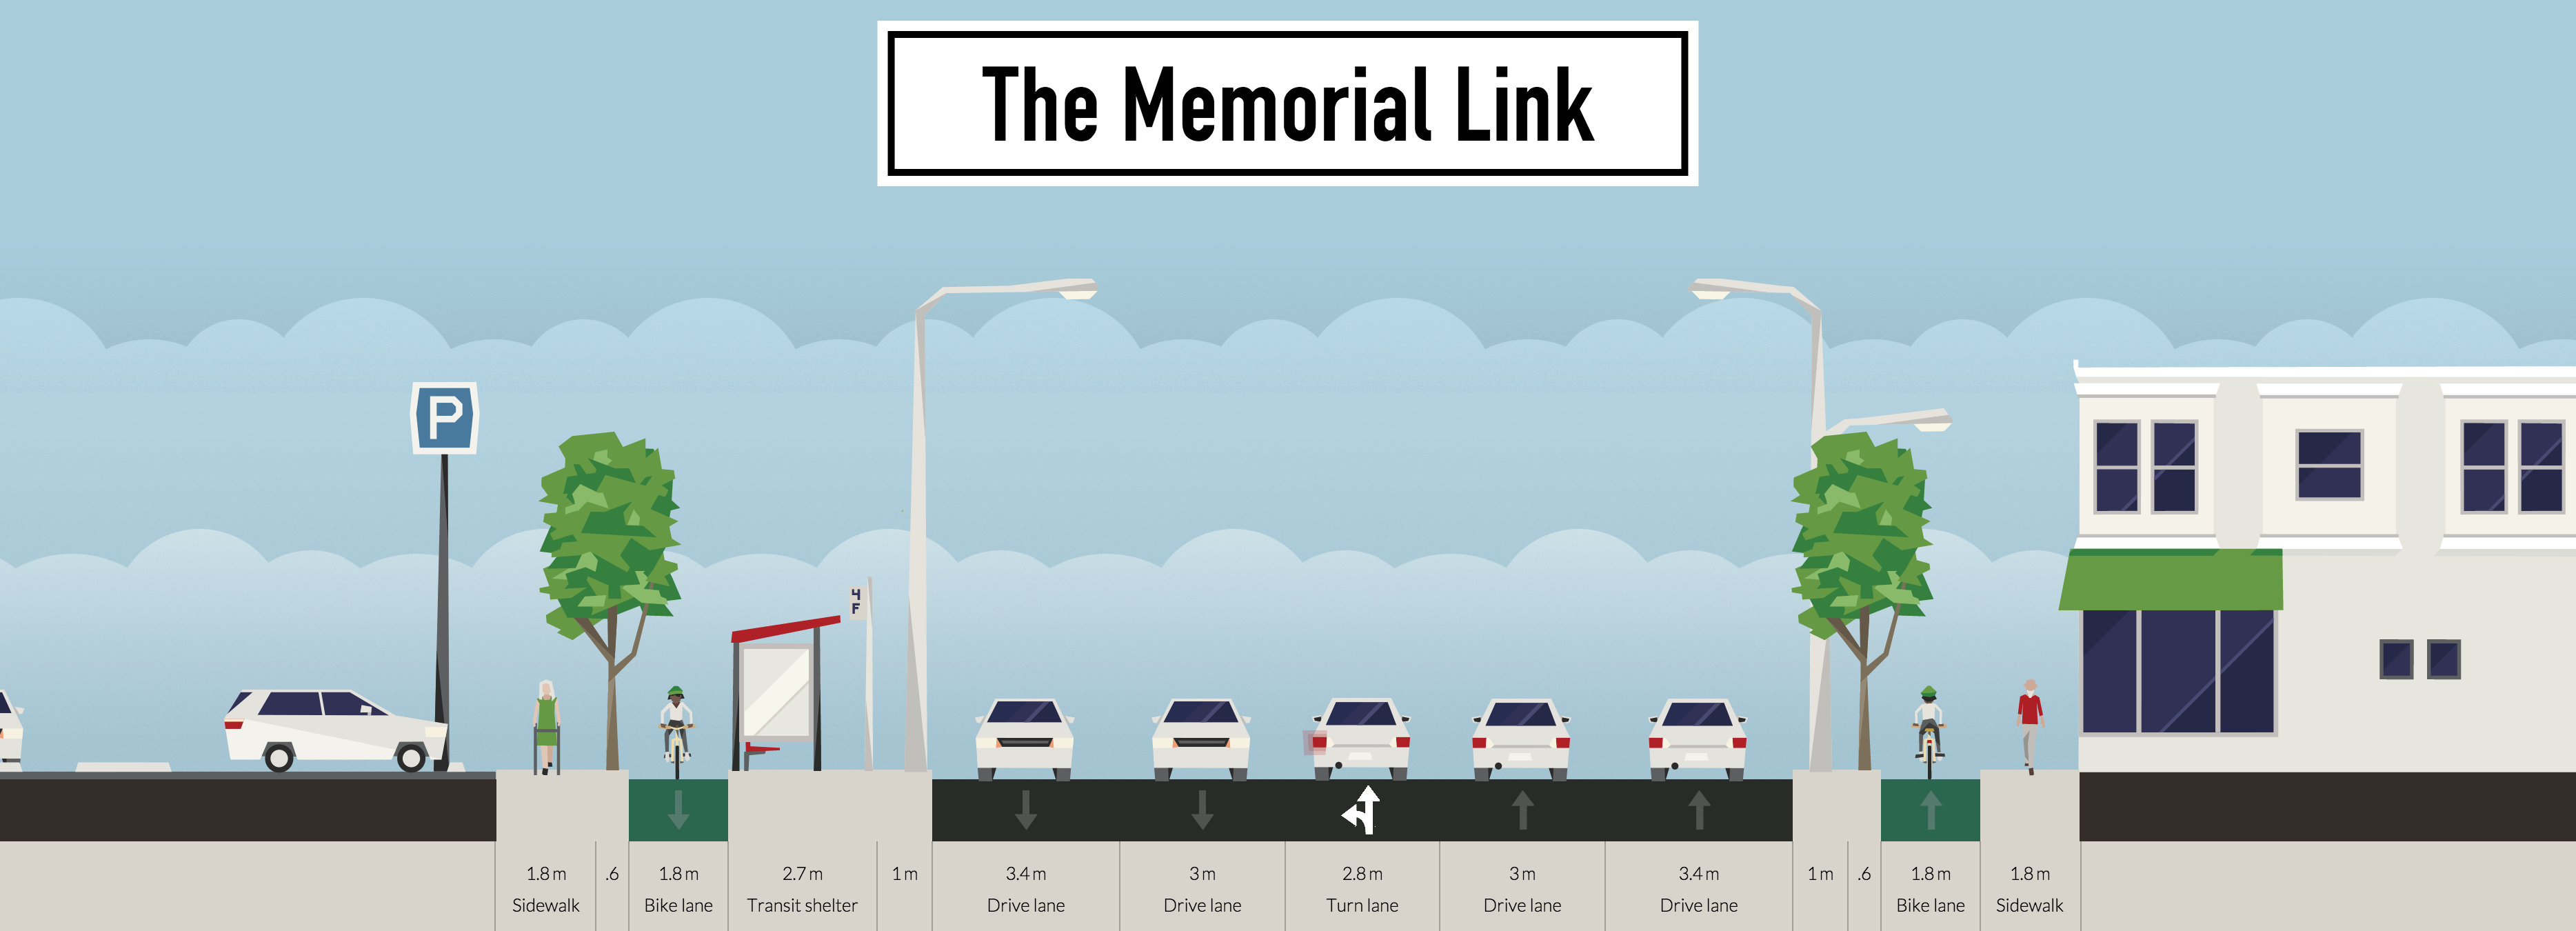 The Memorial Link